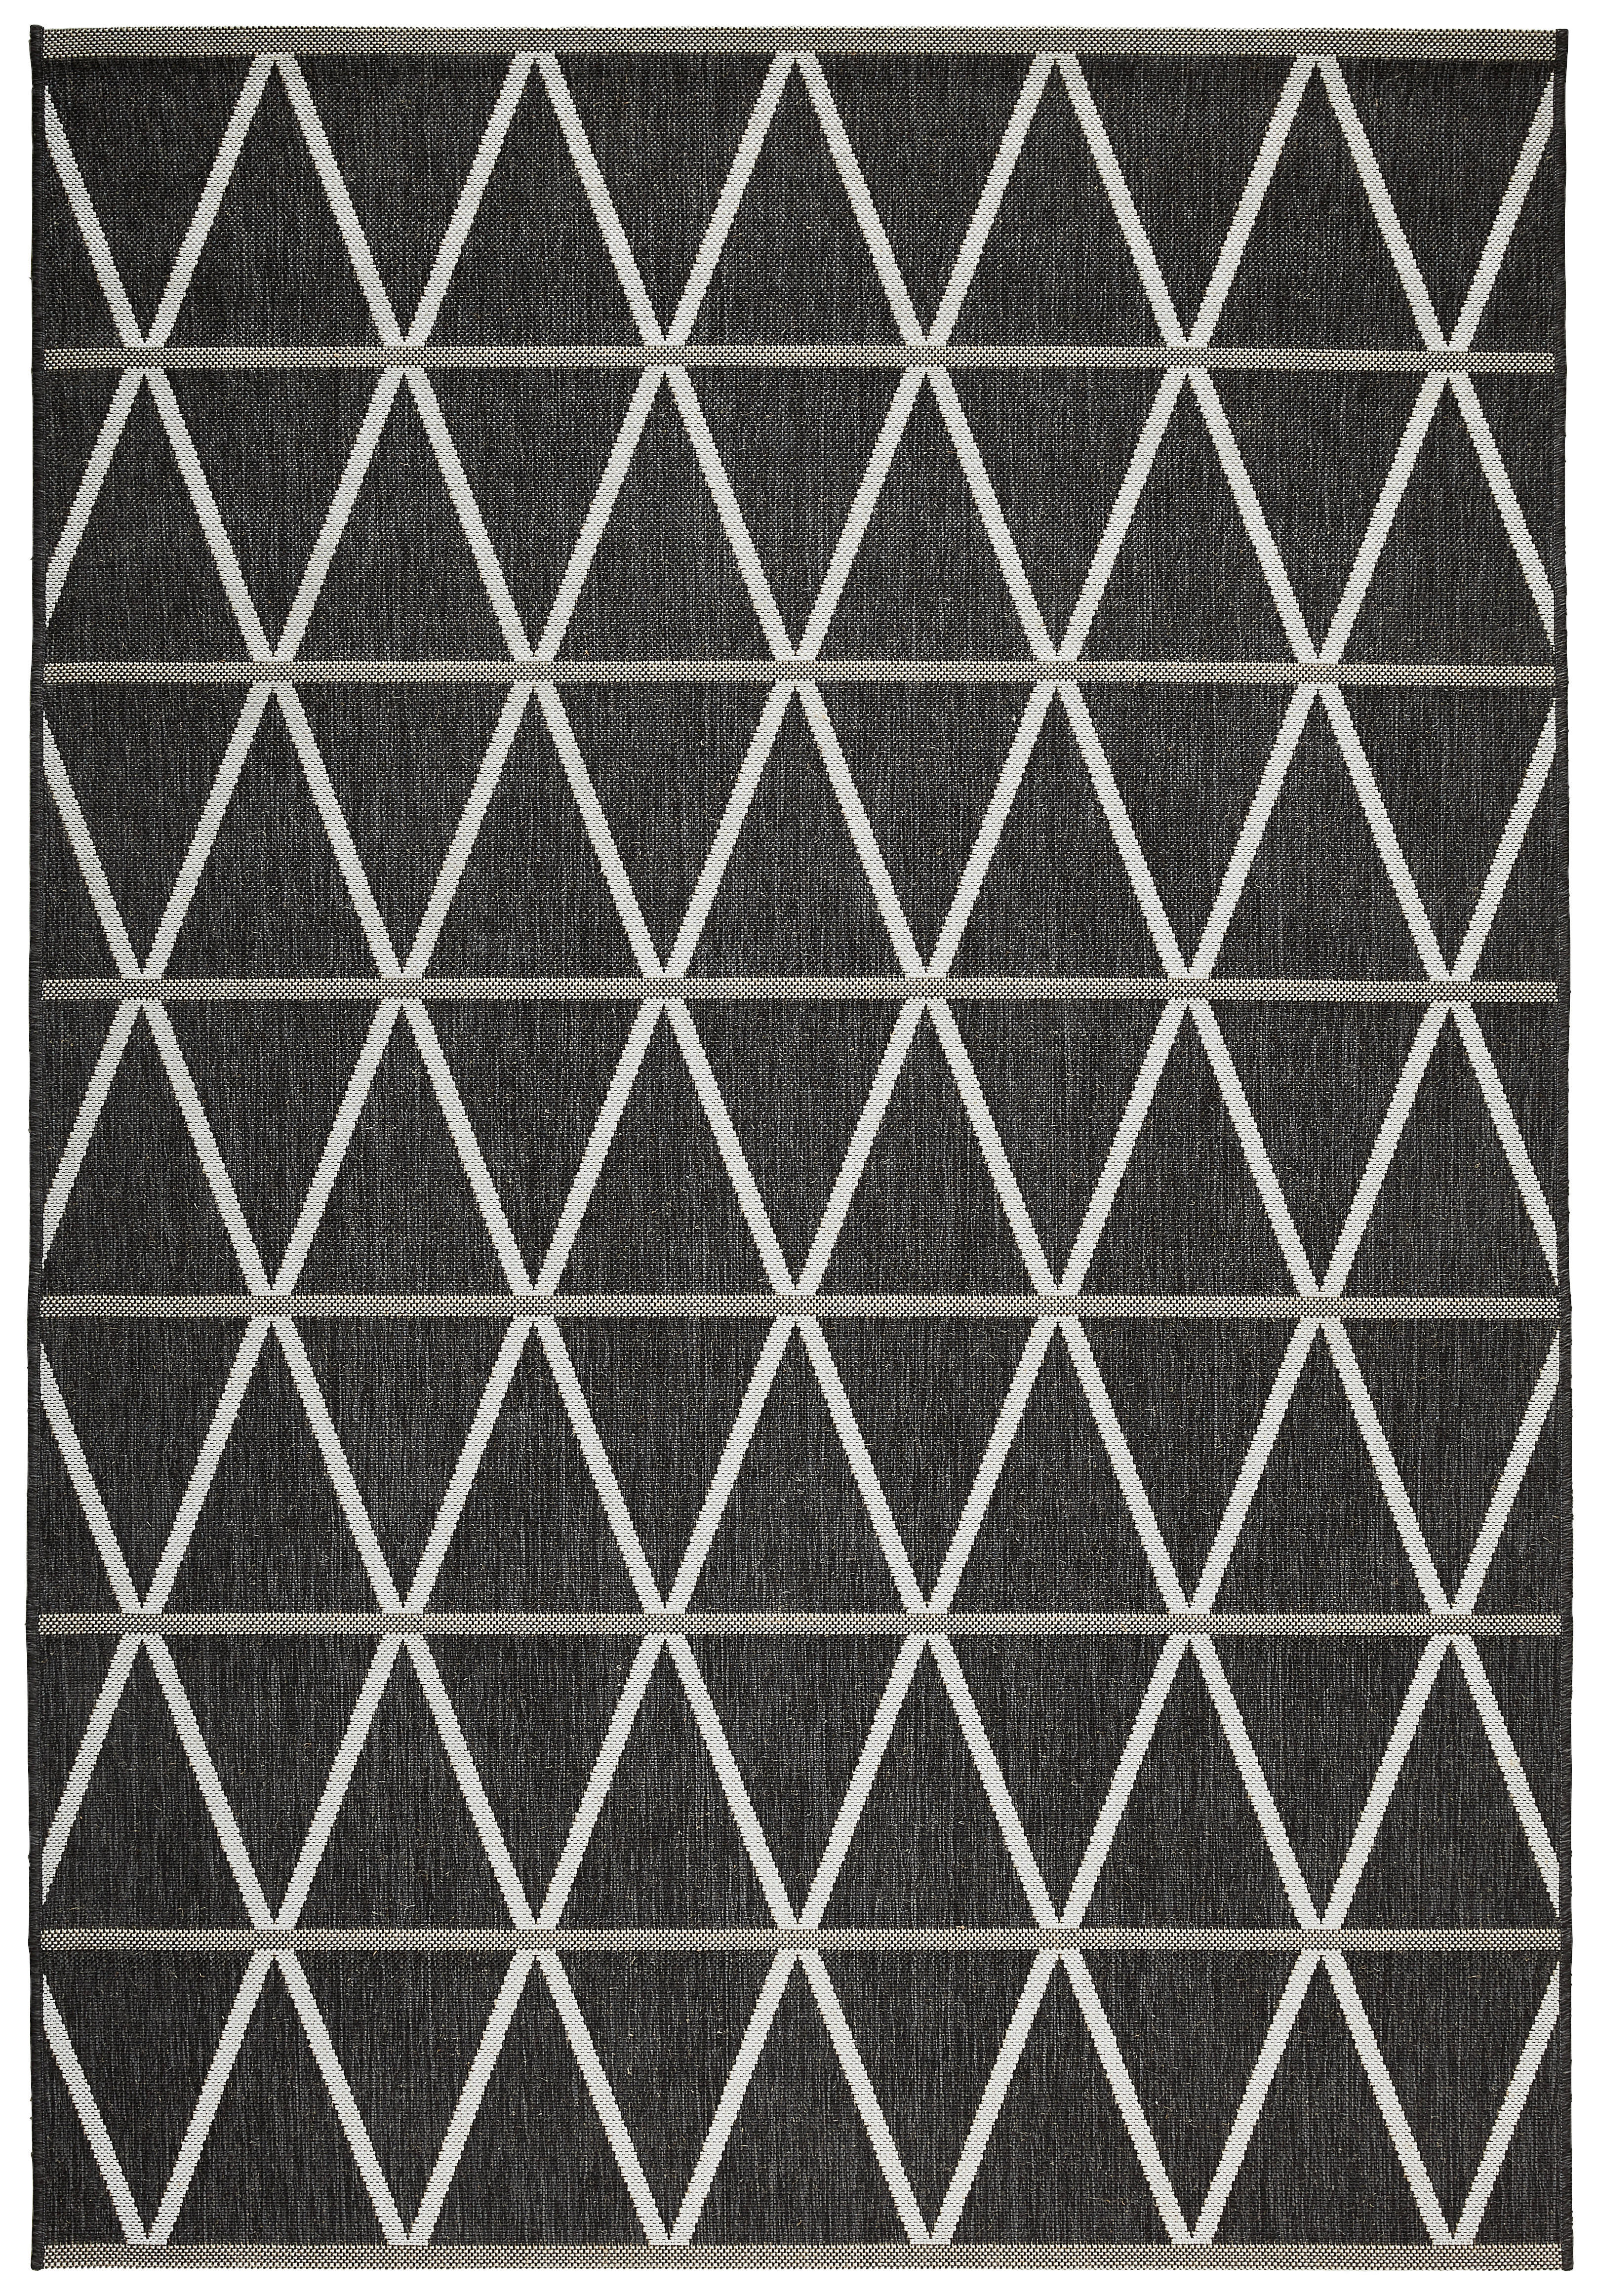 OUTDOORTEPPICH 80/150 cm  - Schwarz, Design, Textil (80/150cm) - Novel